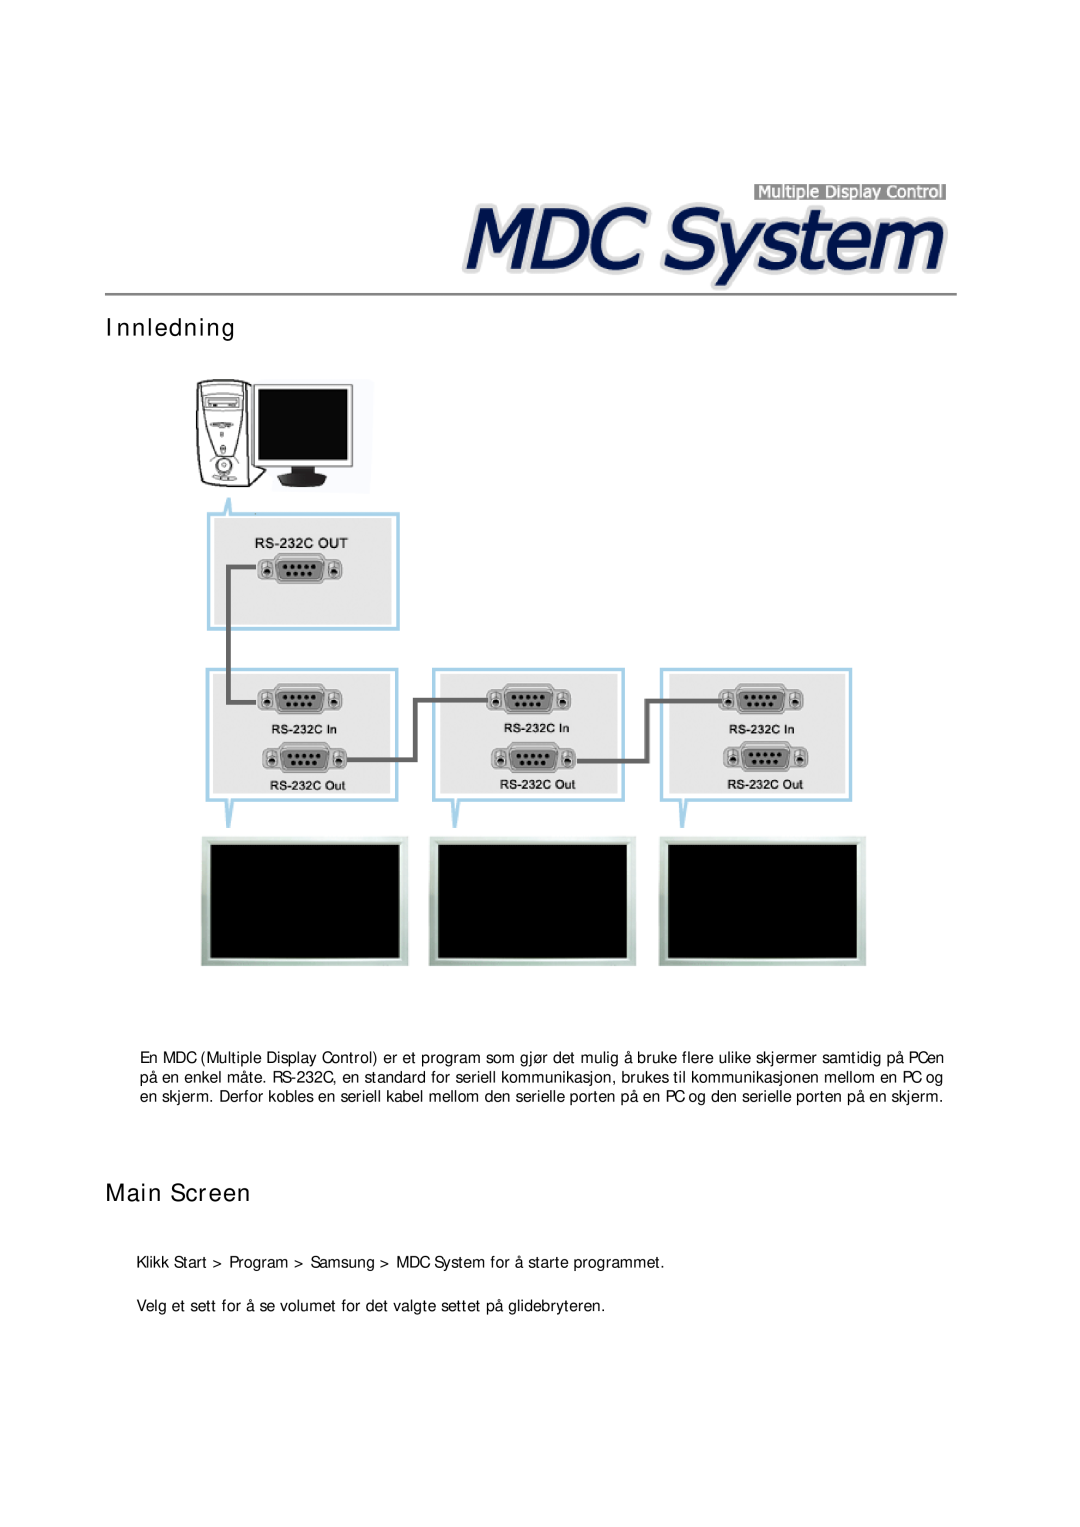 Samsung LH40MRTLBC/EN manual Innledning, Main Screen, Klikk Start Program Samsung MDC System for å starte programmet 